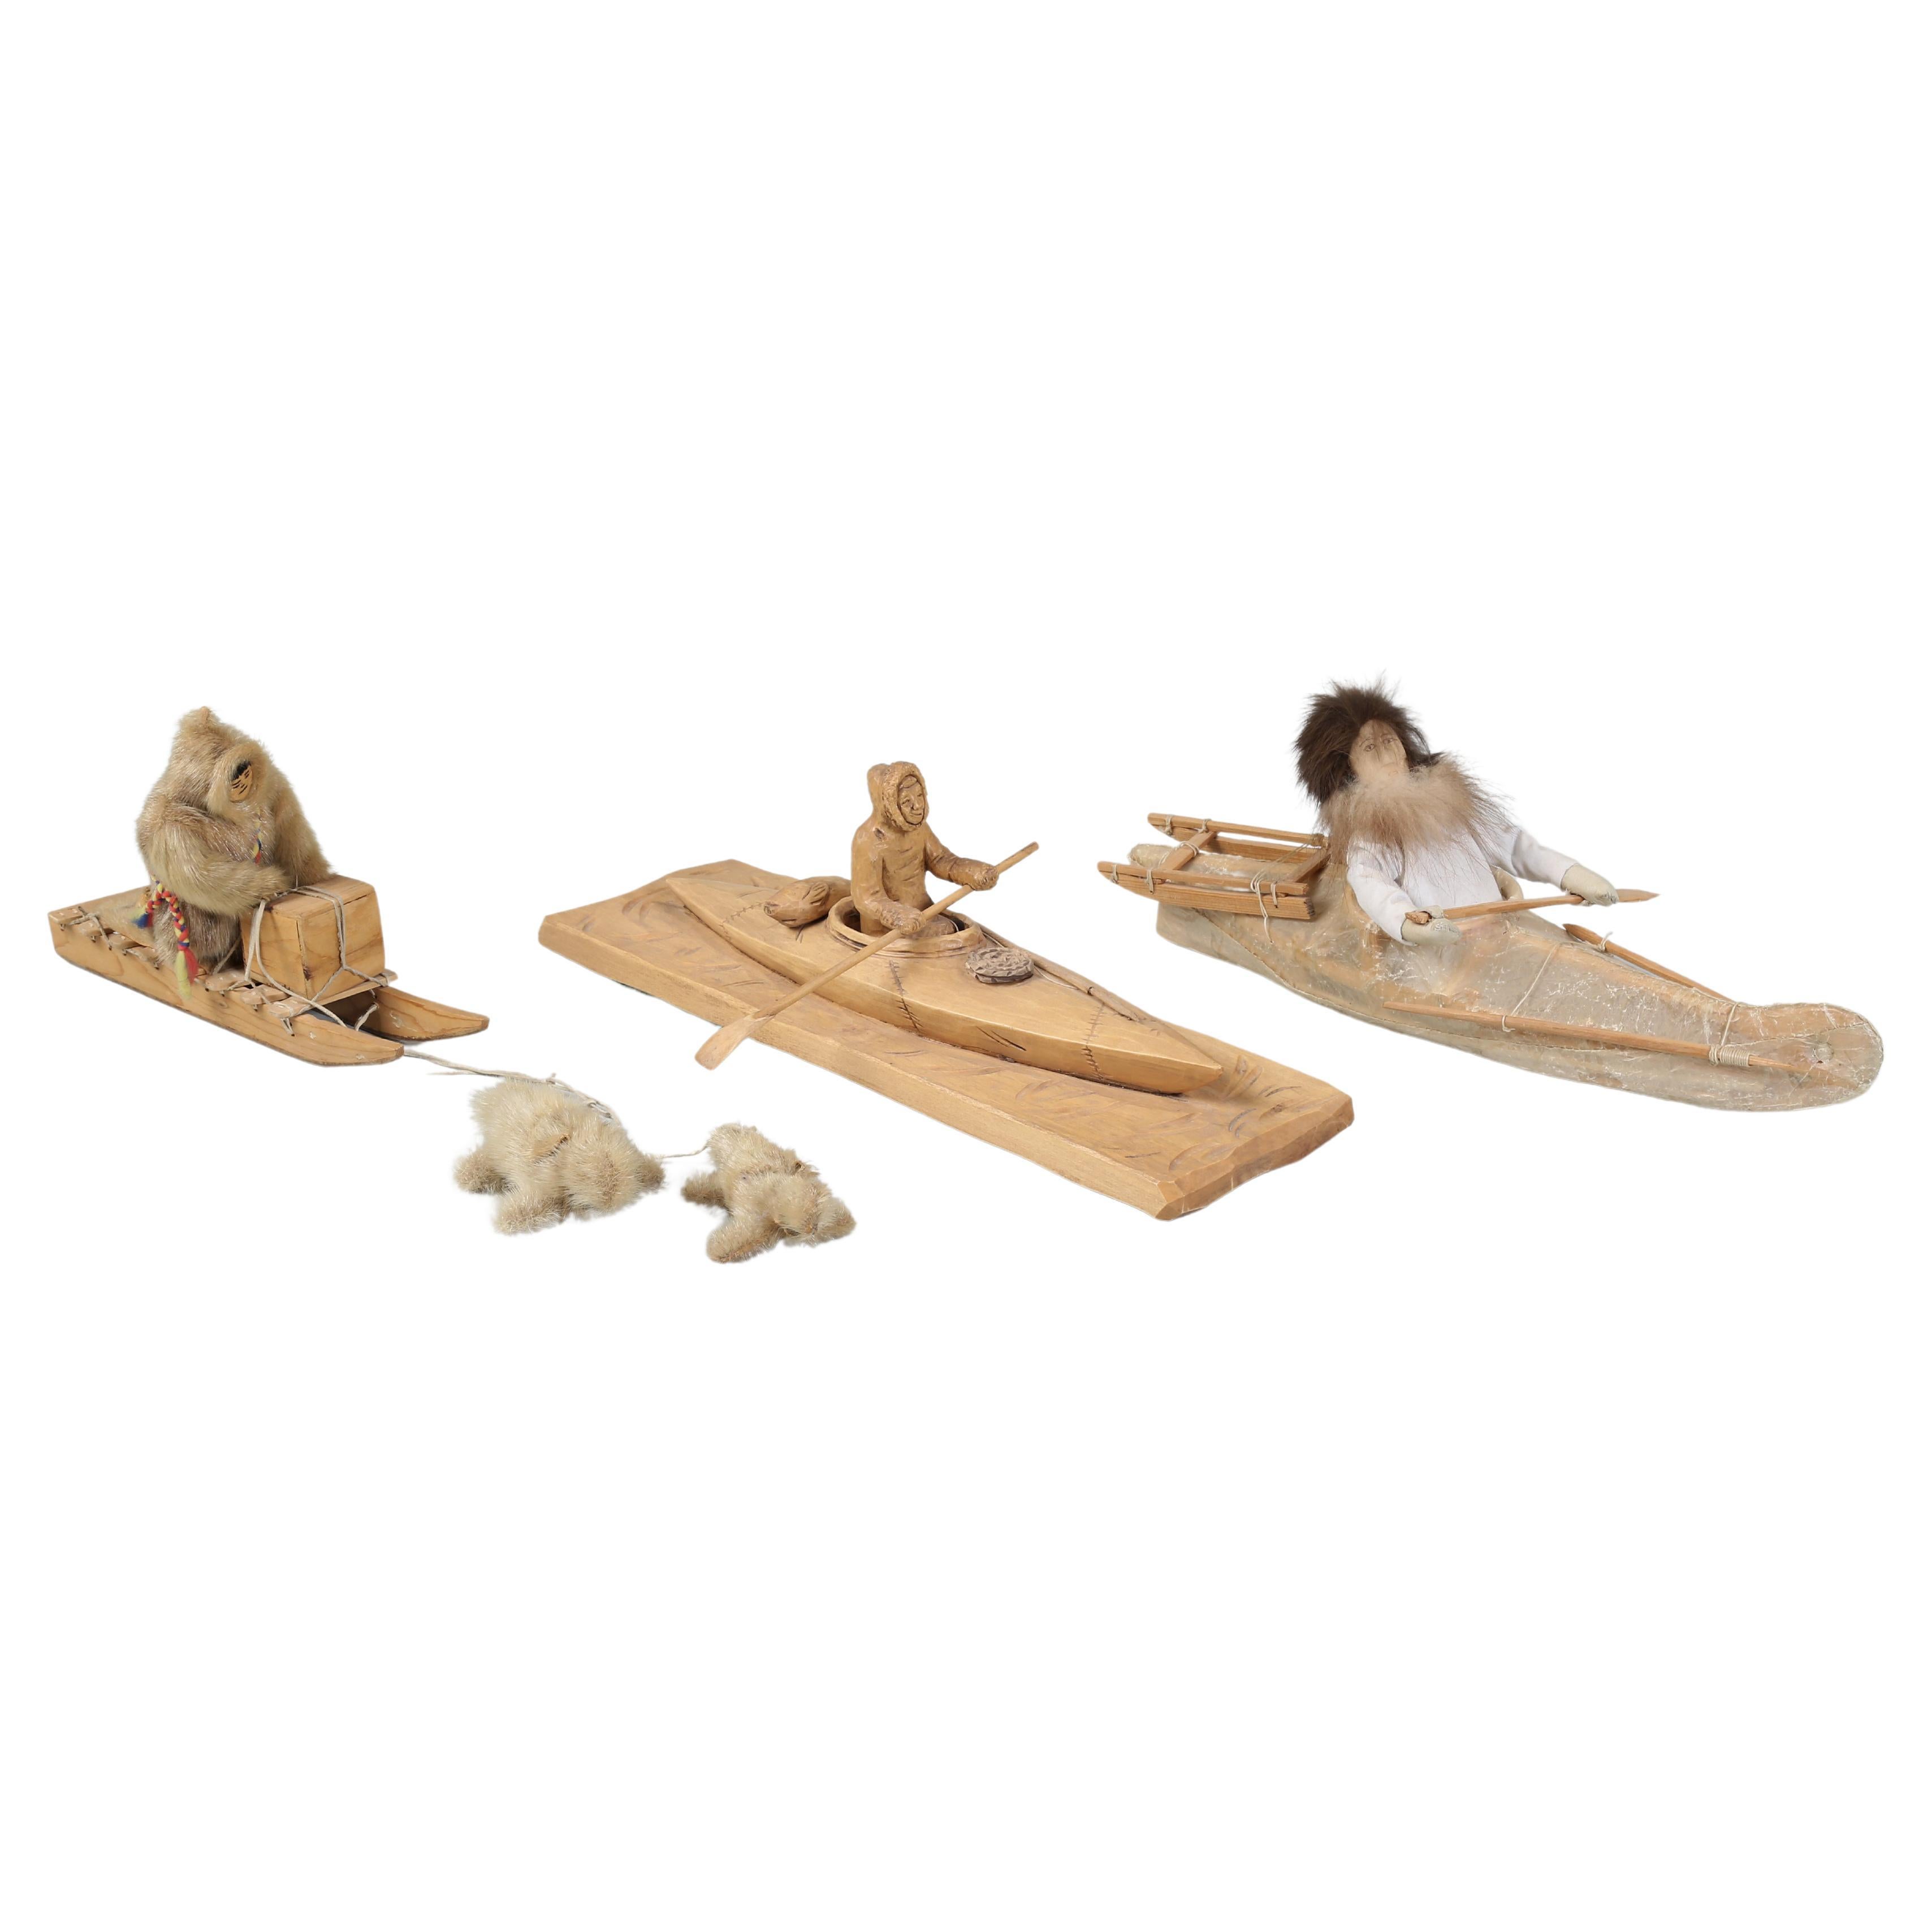 Kollektion von (3) amerikanischen Eskimo-Kinderspielzeugen, von denen zwei von ihnen identifiziert sind 